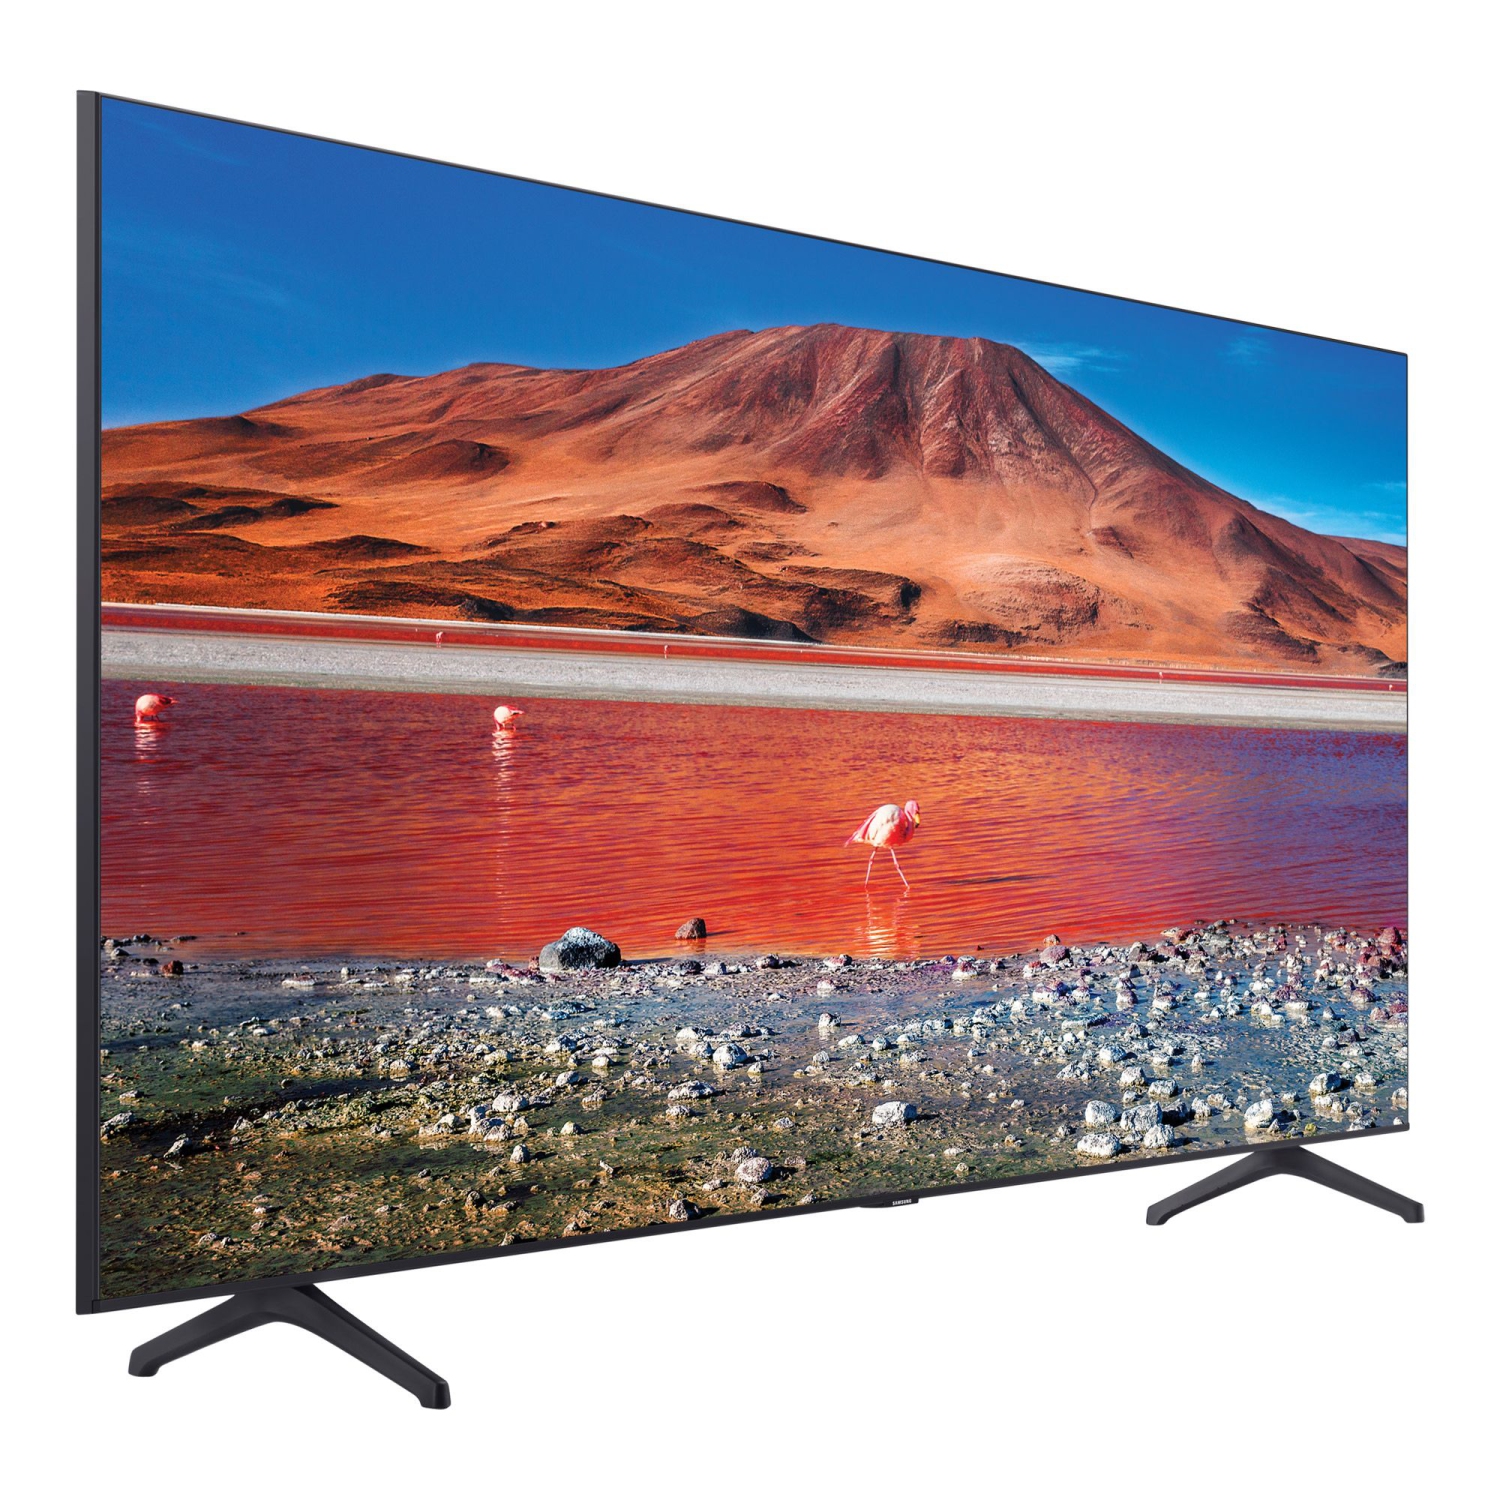 Samsung 55" 4K UHD HDR LED Tizen Smart TV (UN55TU700D/UN55TU7000) - Titan Grey - US model Open Box in non original box with Seller Provided Warranty